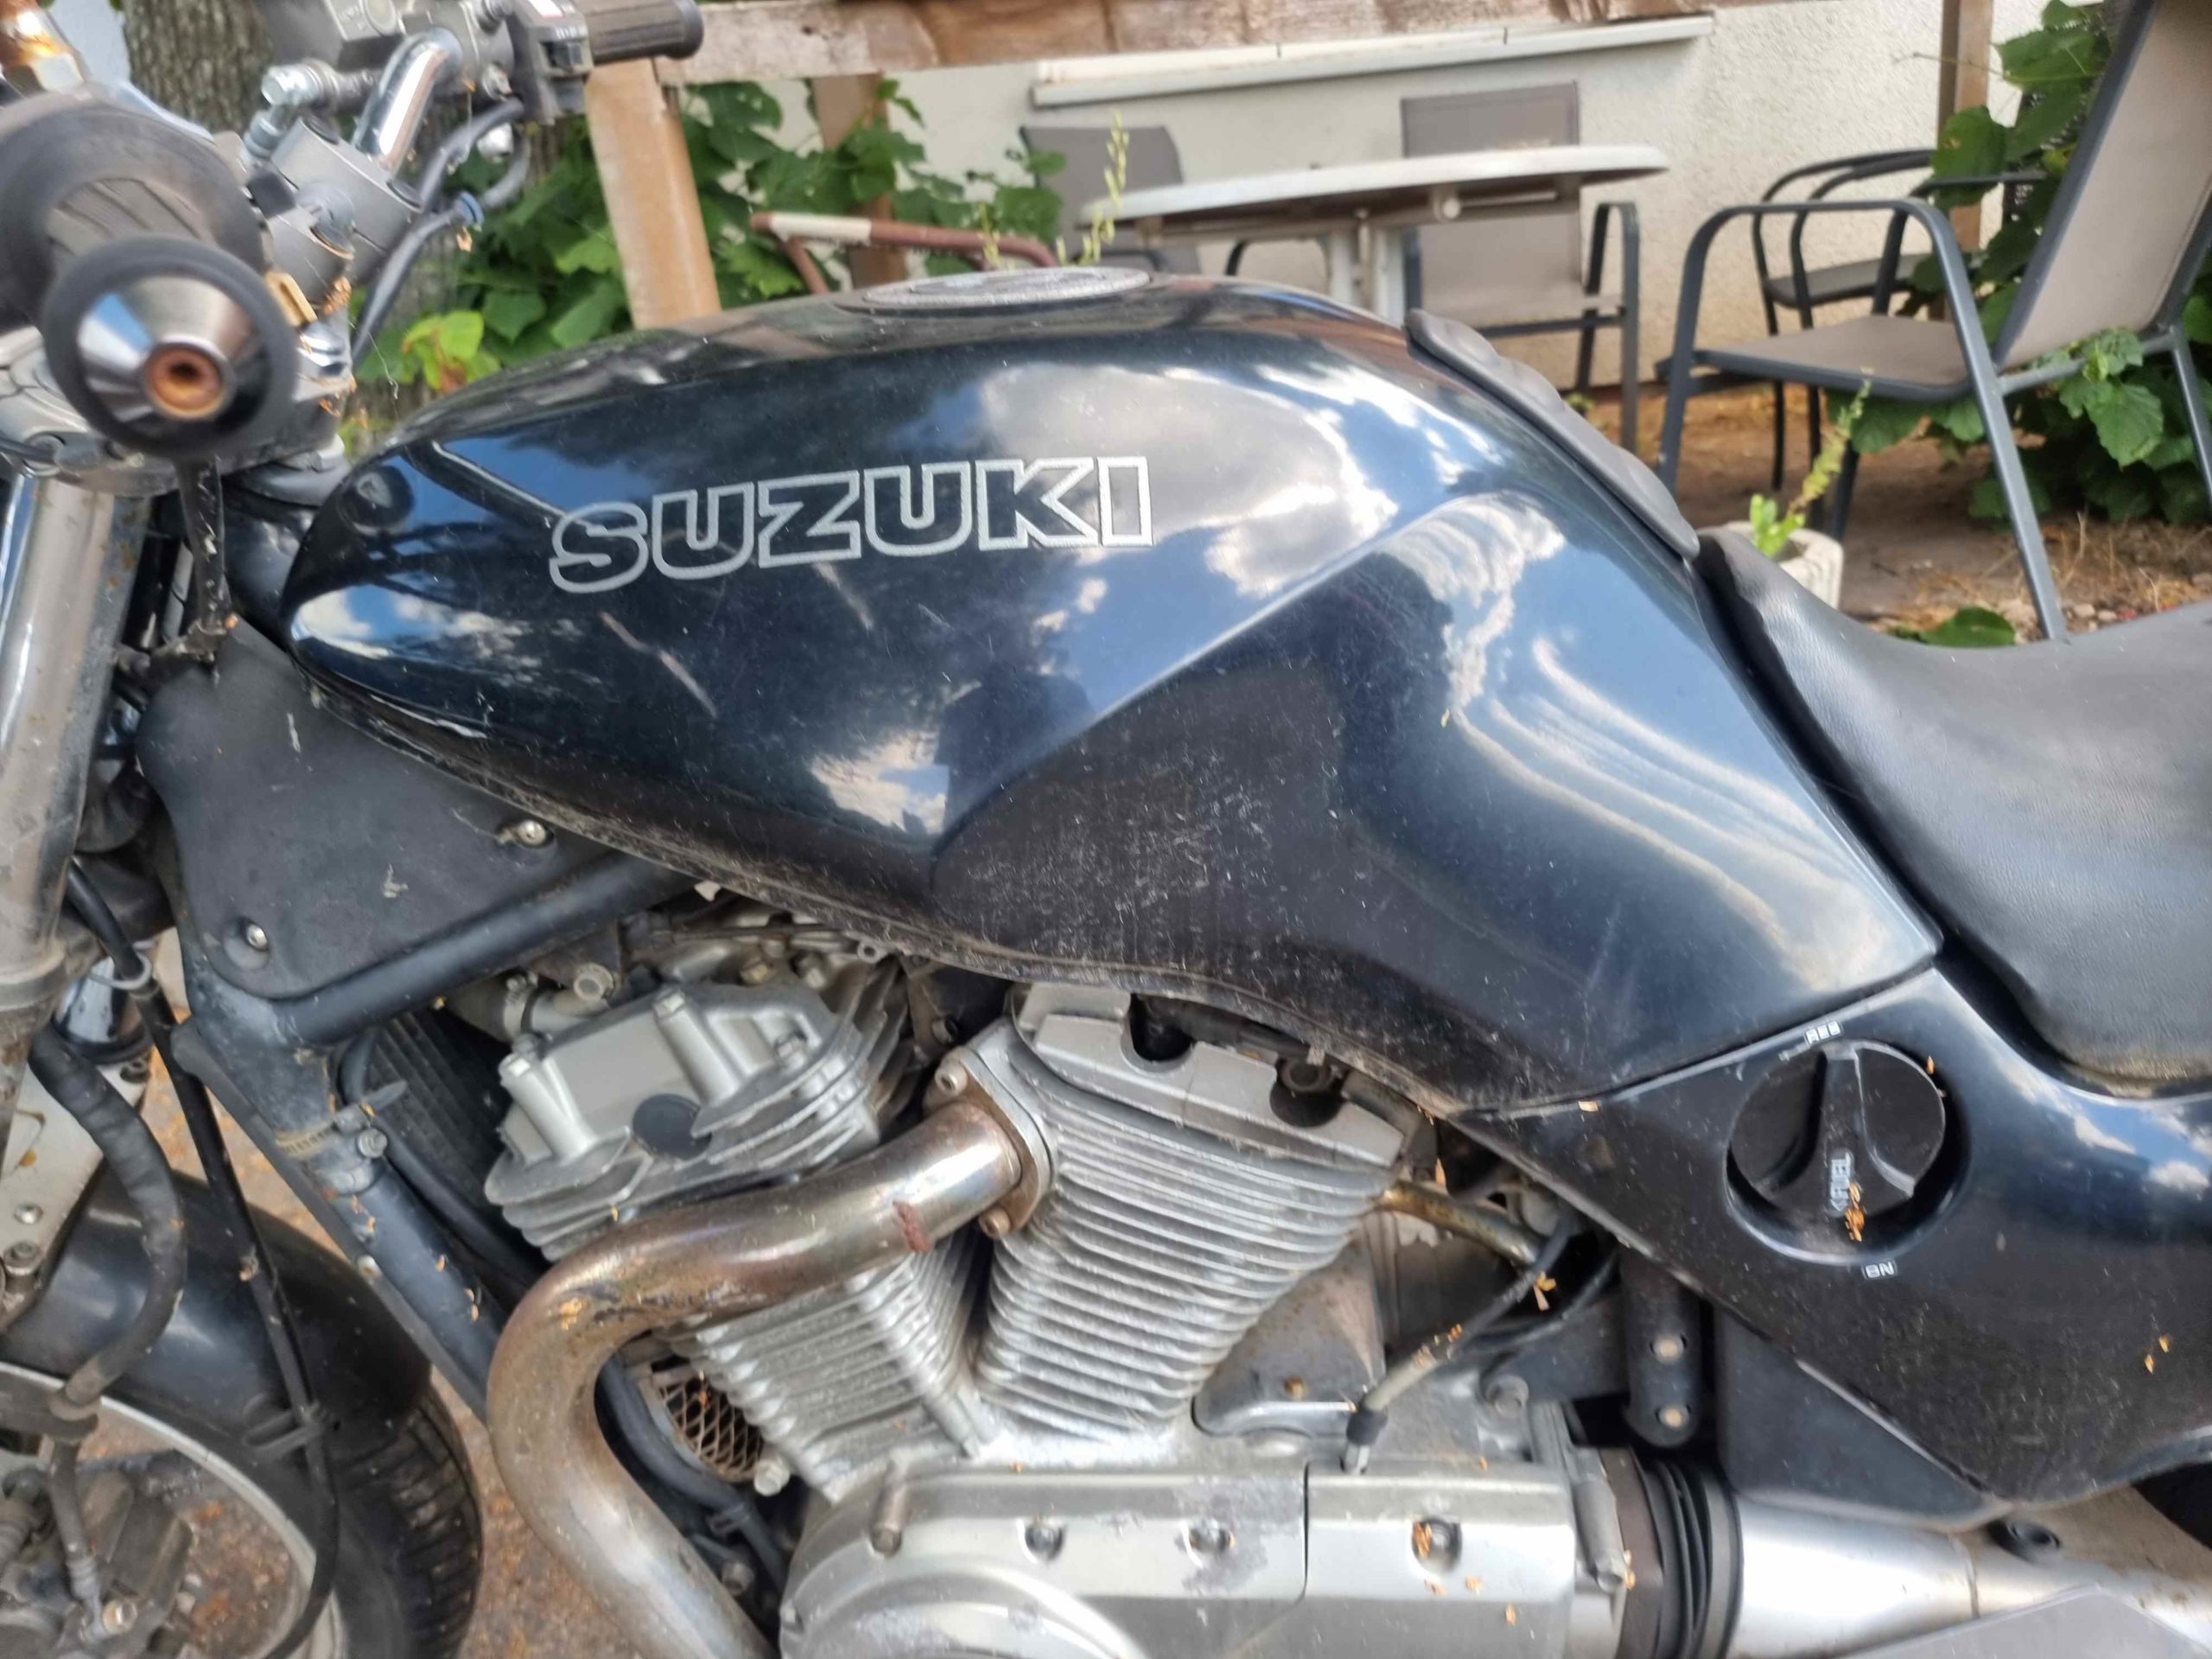 Suzuki VX 800 Naked Bike Tourer mit 61 PS in schwarz